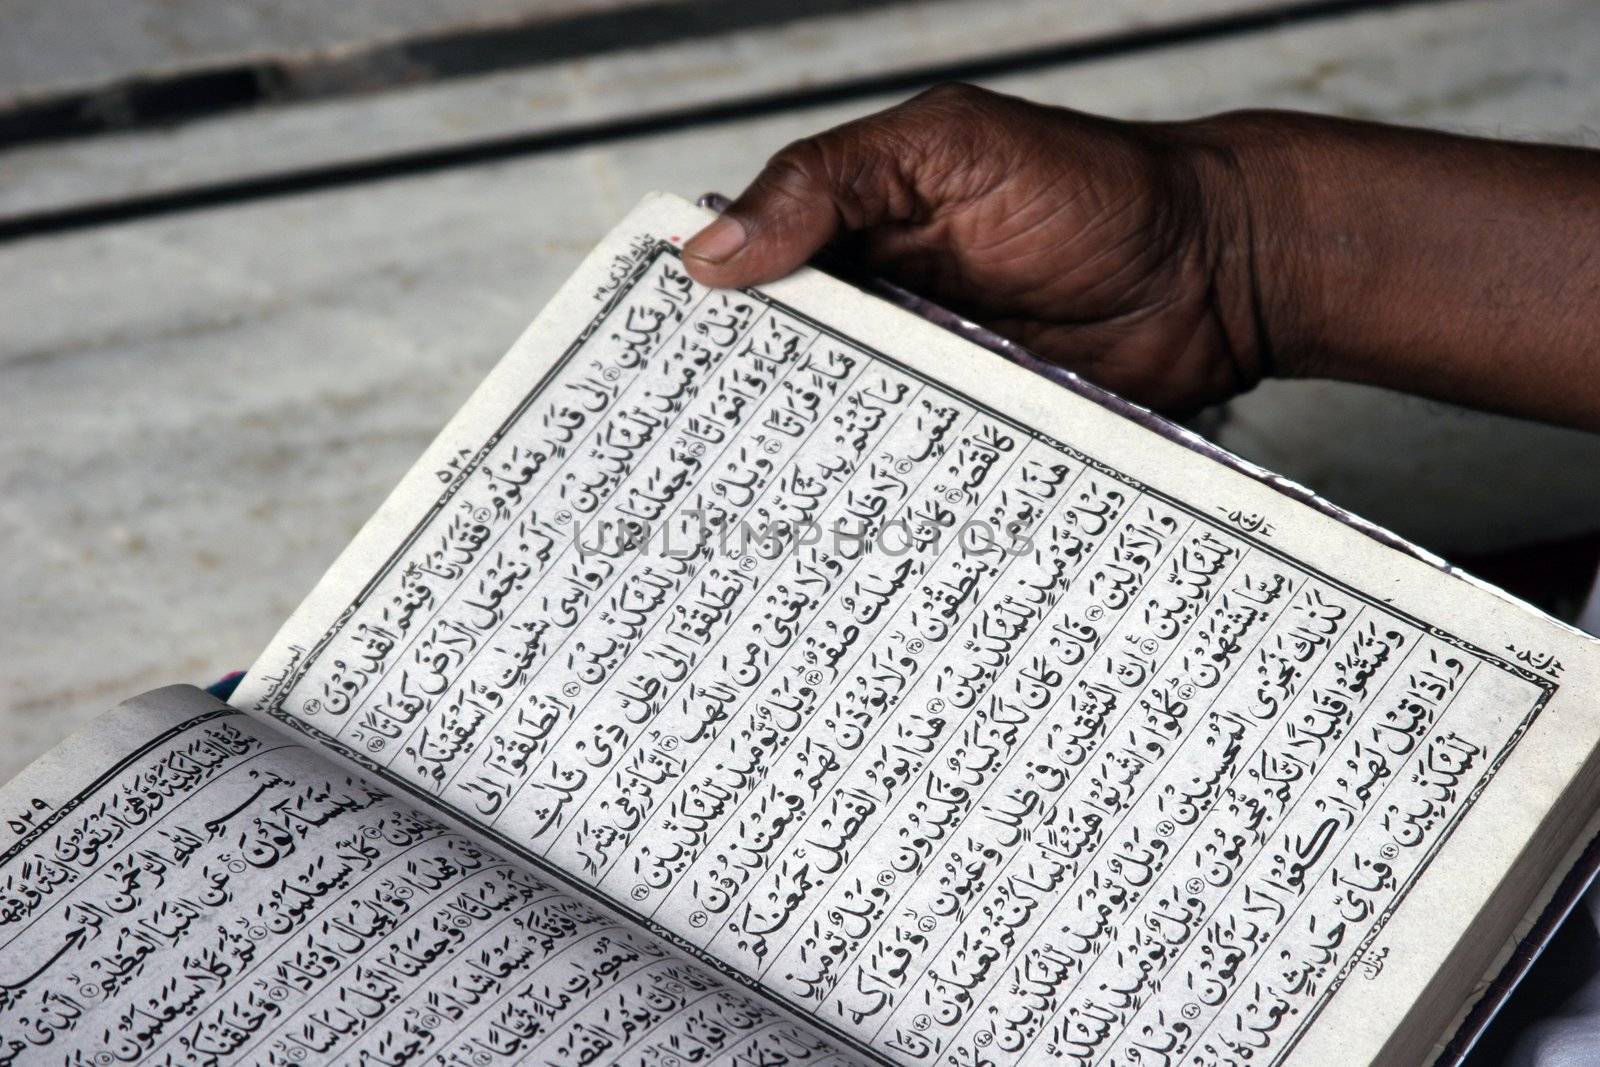 Reading Koran by Marko5